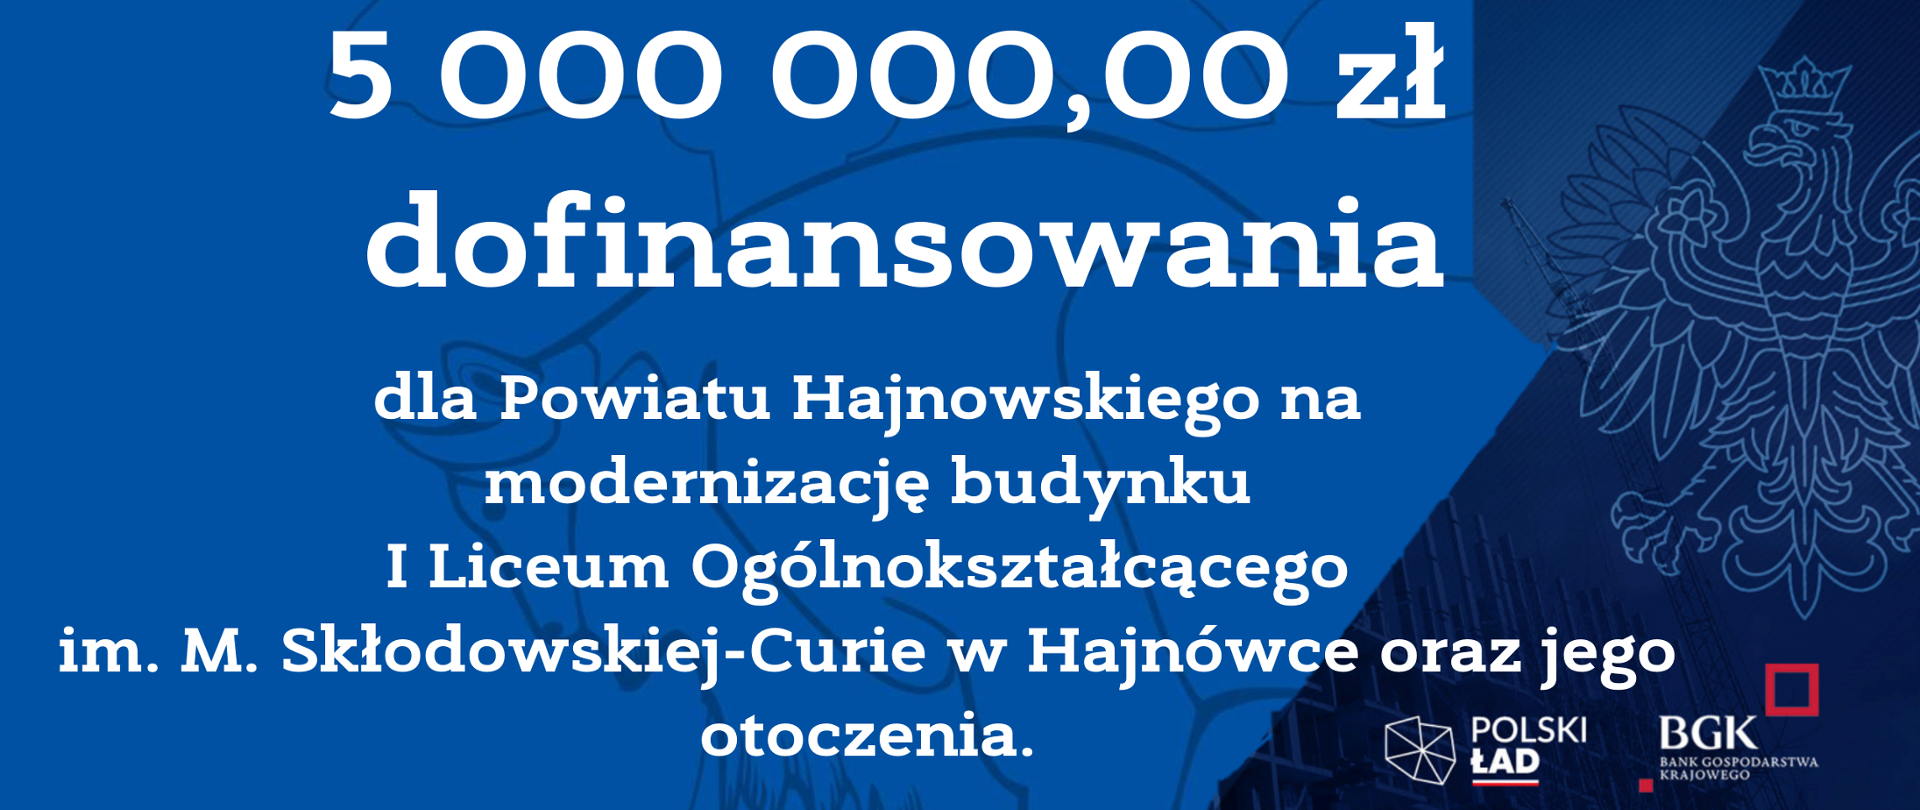 5 000 000,00 zł dofinansowania dla Powiatu Hajnowskiego na modernizację budynku I Liceum Ogólnokształcącego im. M. Skłodowskiej-Curie w Hajnówce oraz jego otoczenia.